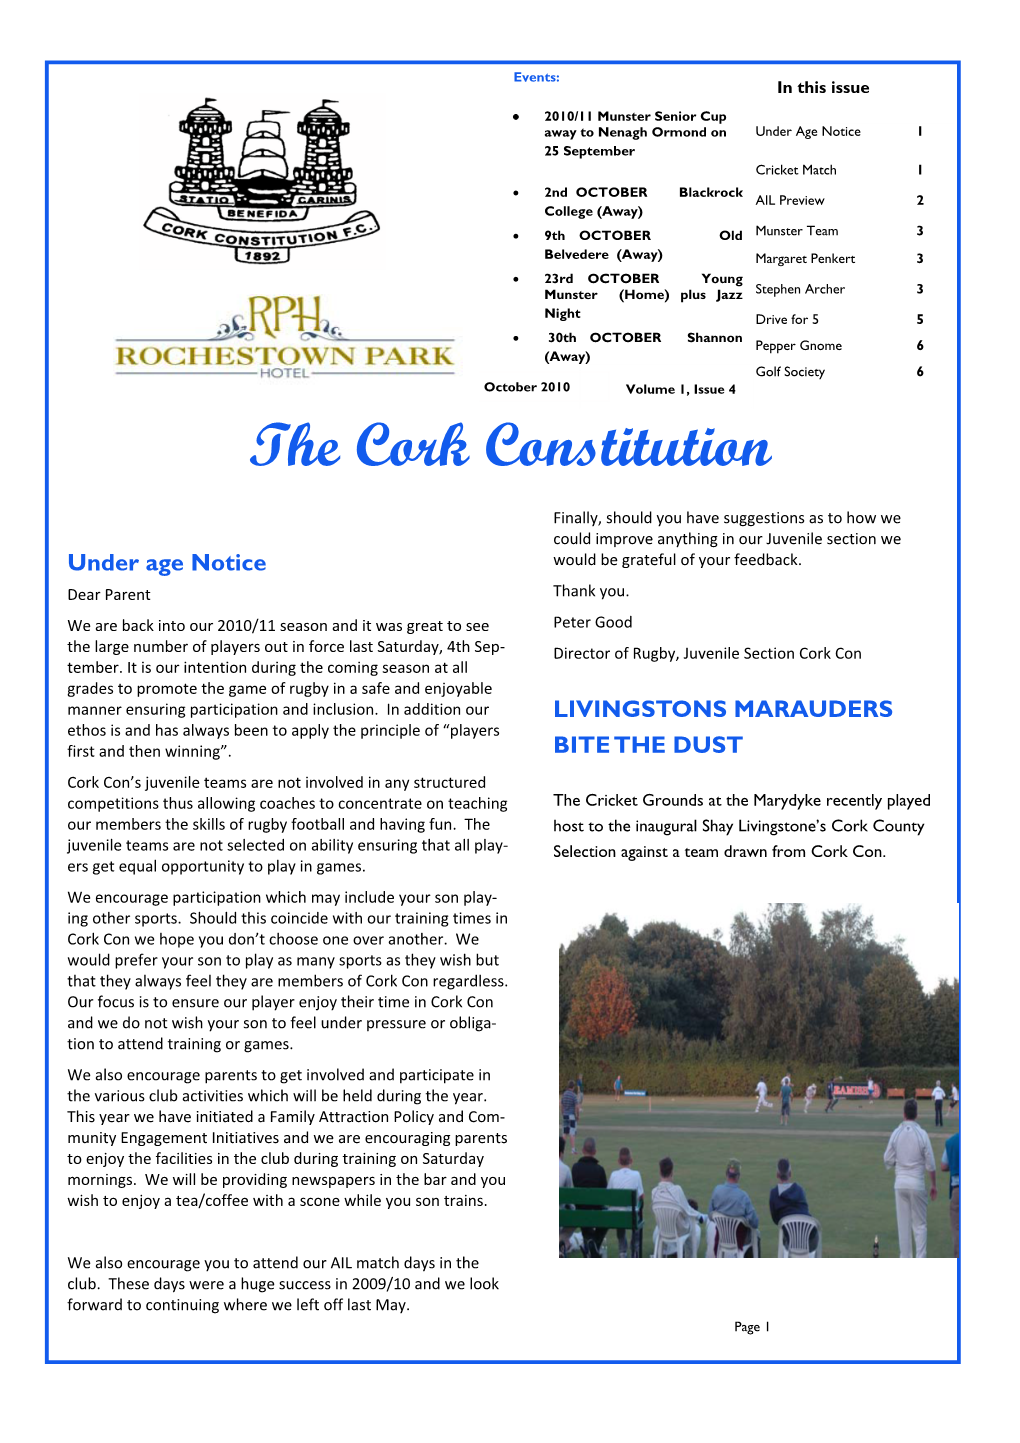 CCFC Oct 2010 Ezine Issue 4